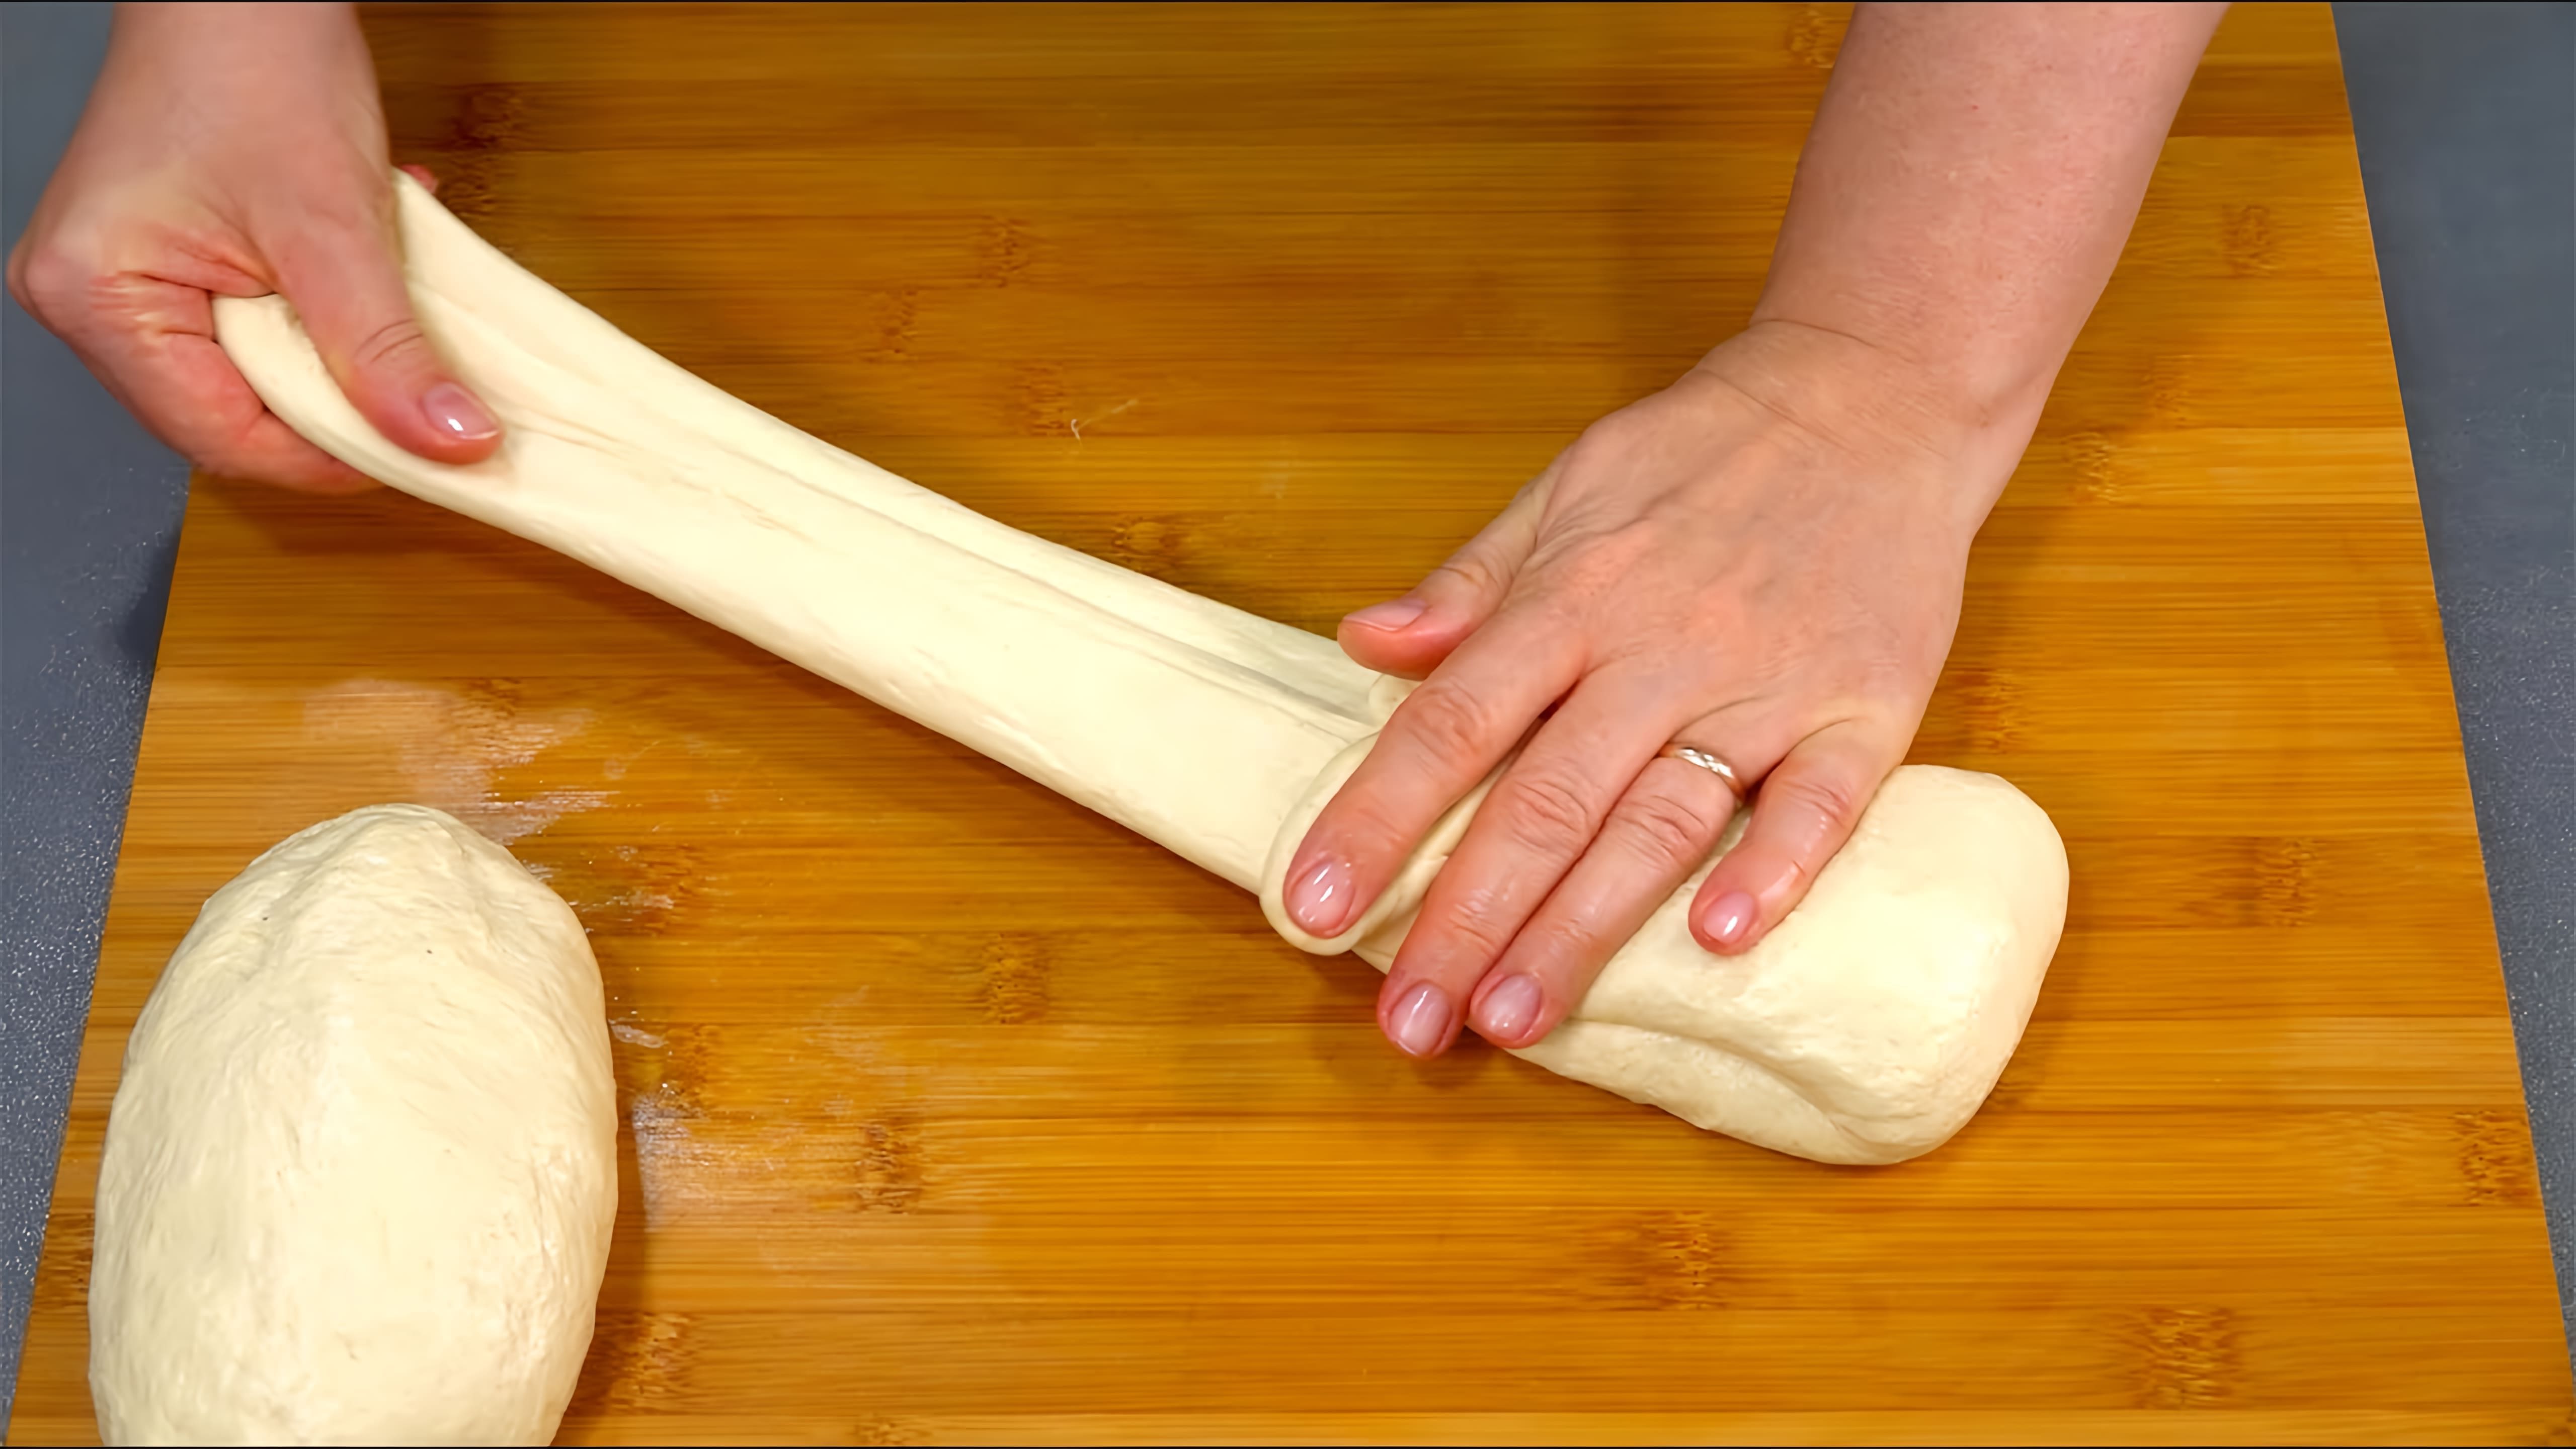 В этом видео демонстрируется процесс приготовления семи различных рецептов домашнего хлеба